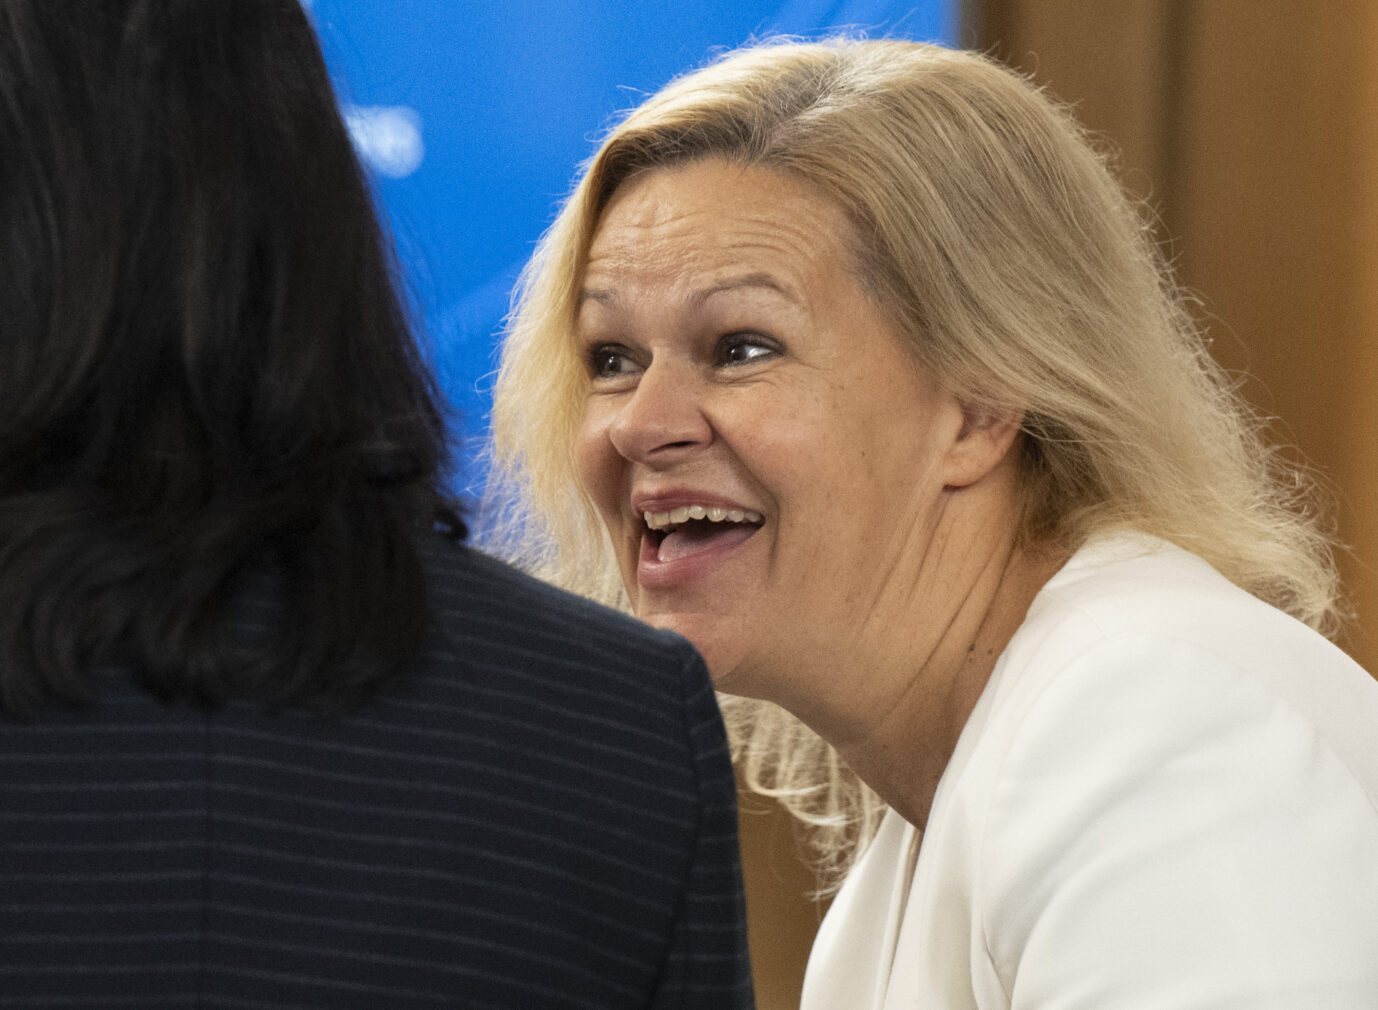 Bundesinnenministerin Nancy Faeser (SPD) lacht beim Treffen der G7-Innenminister auf dem historischen Kloster Eberbach. Bei dem Treffen der G7 in Eltville tauschen die Innenministerinnen und -minister sich über die gemeinsamen Werte von Demokratie, Rechtsstaatlichkeit und Menschenrechten sowie soziale Gerechtigkeit, Gleichstellung und inklusive Digitalisierung aus. Asylverfahren sollen schneller gehen.